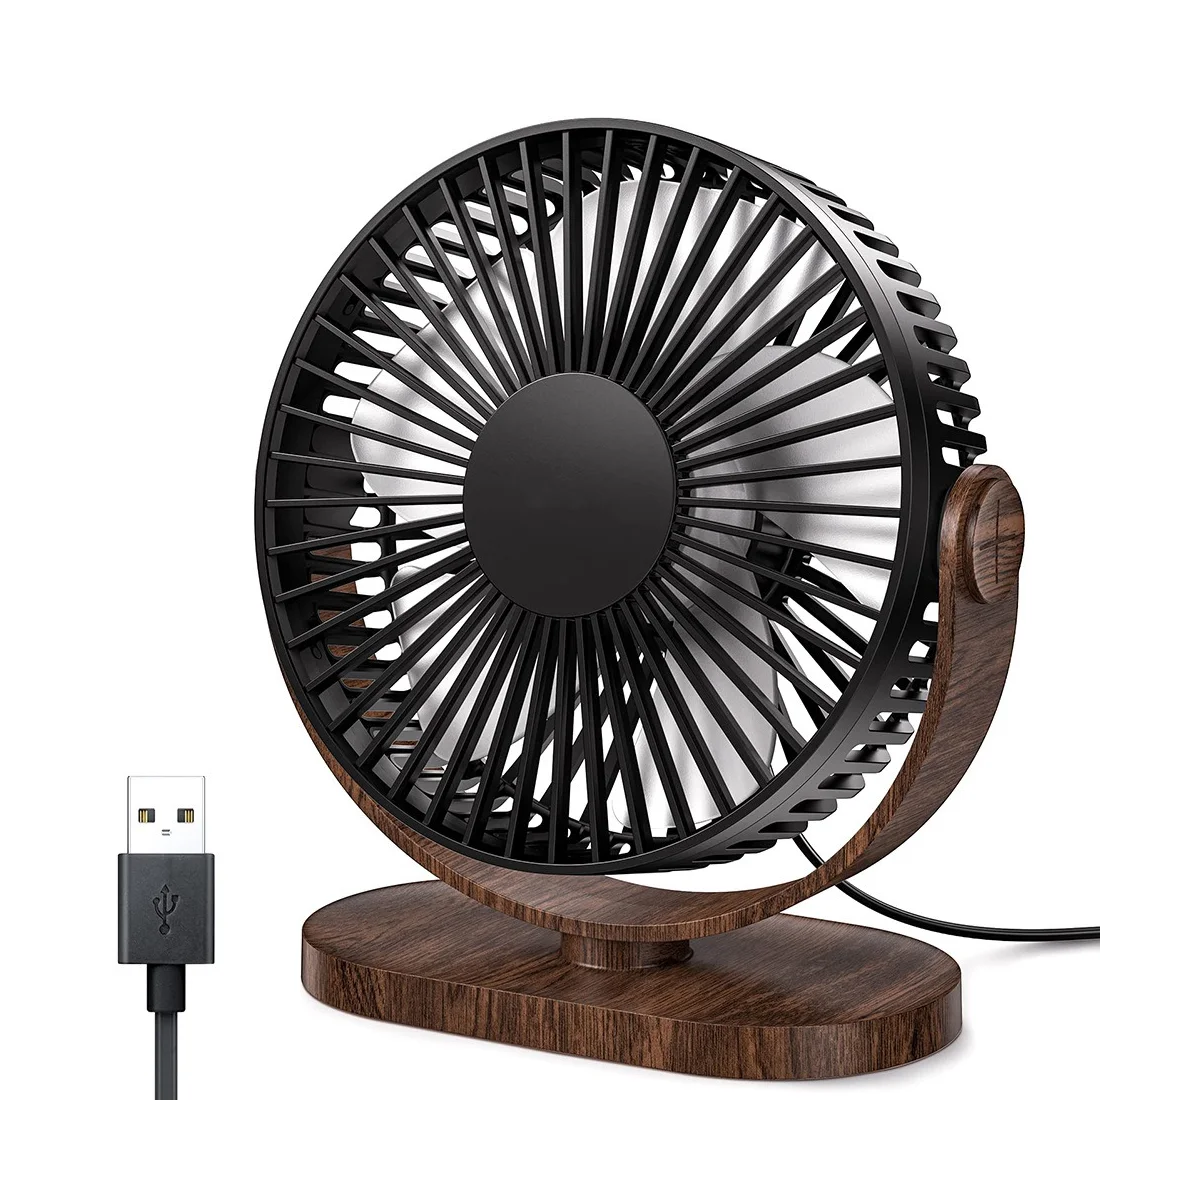 

6.5 Inch USB Desk Fan 3 Speeds Quiet Portable Desktop Table Fan 360° Adjustment Personal Mini Fan Office Black